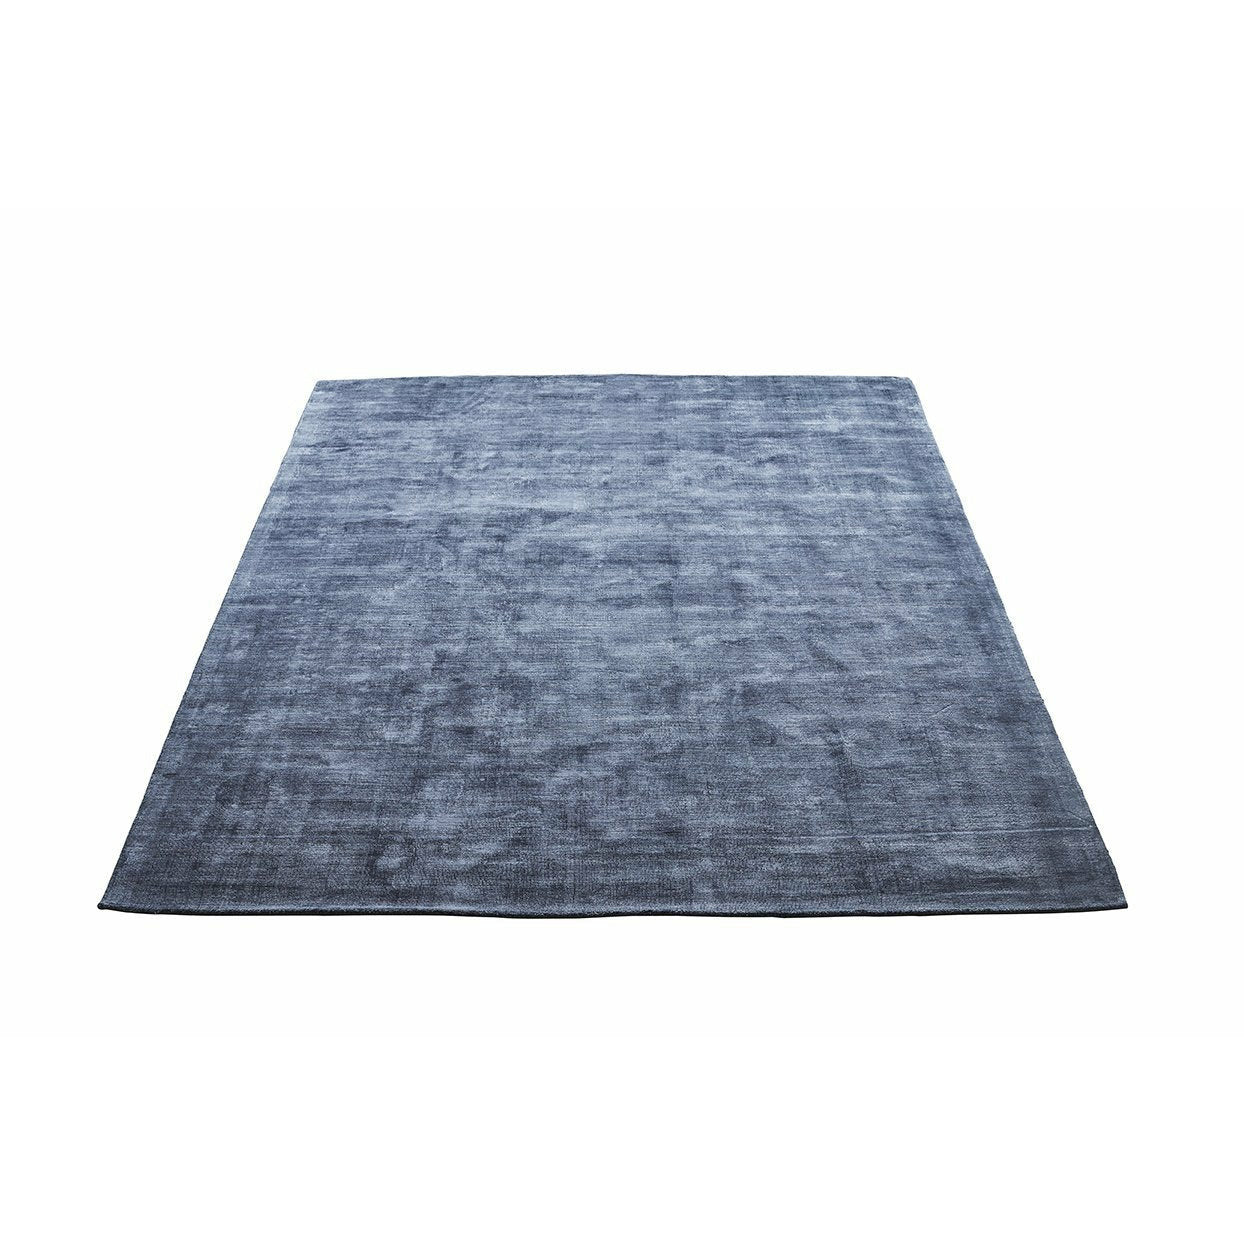 Massimo karma tapete azul lavado, 200x300 cm